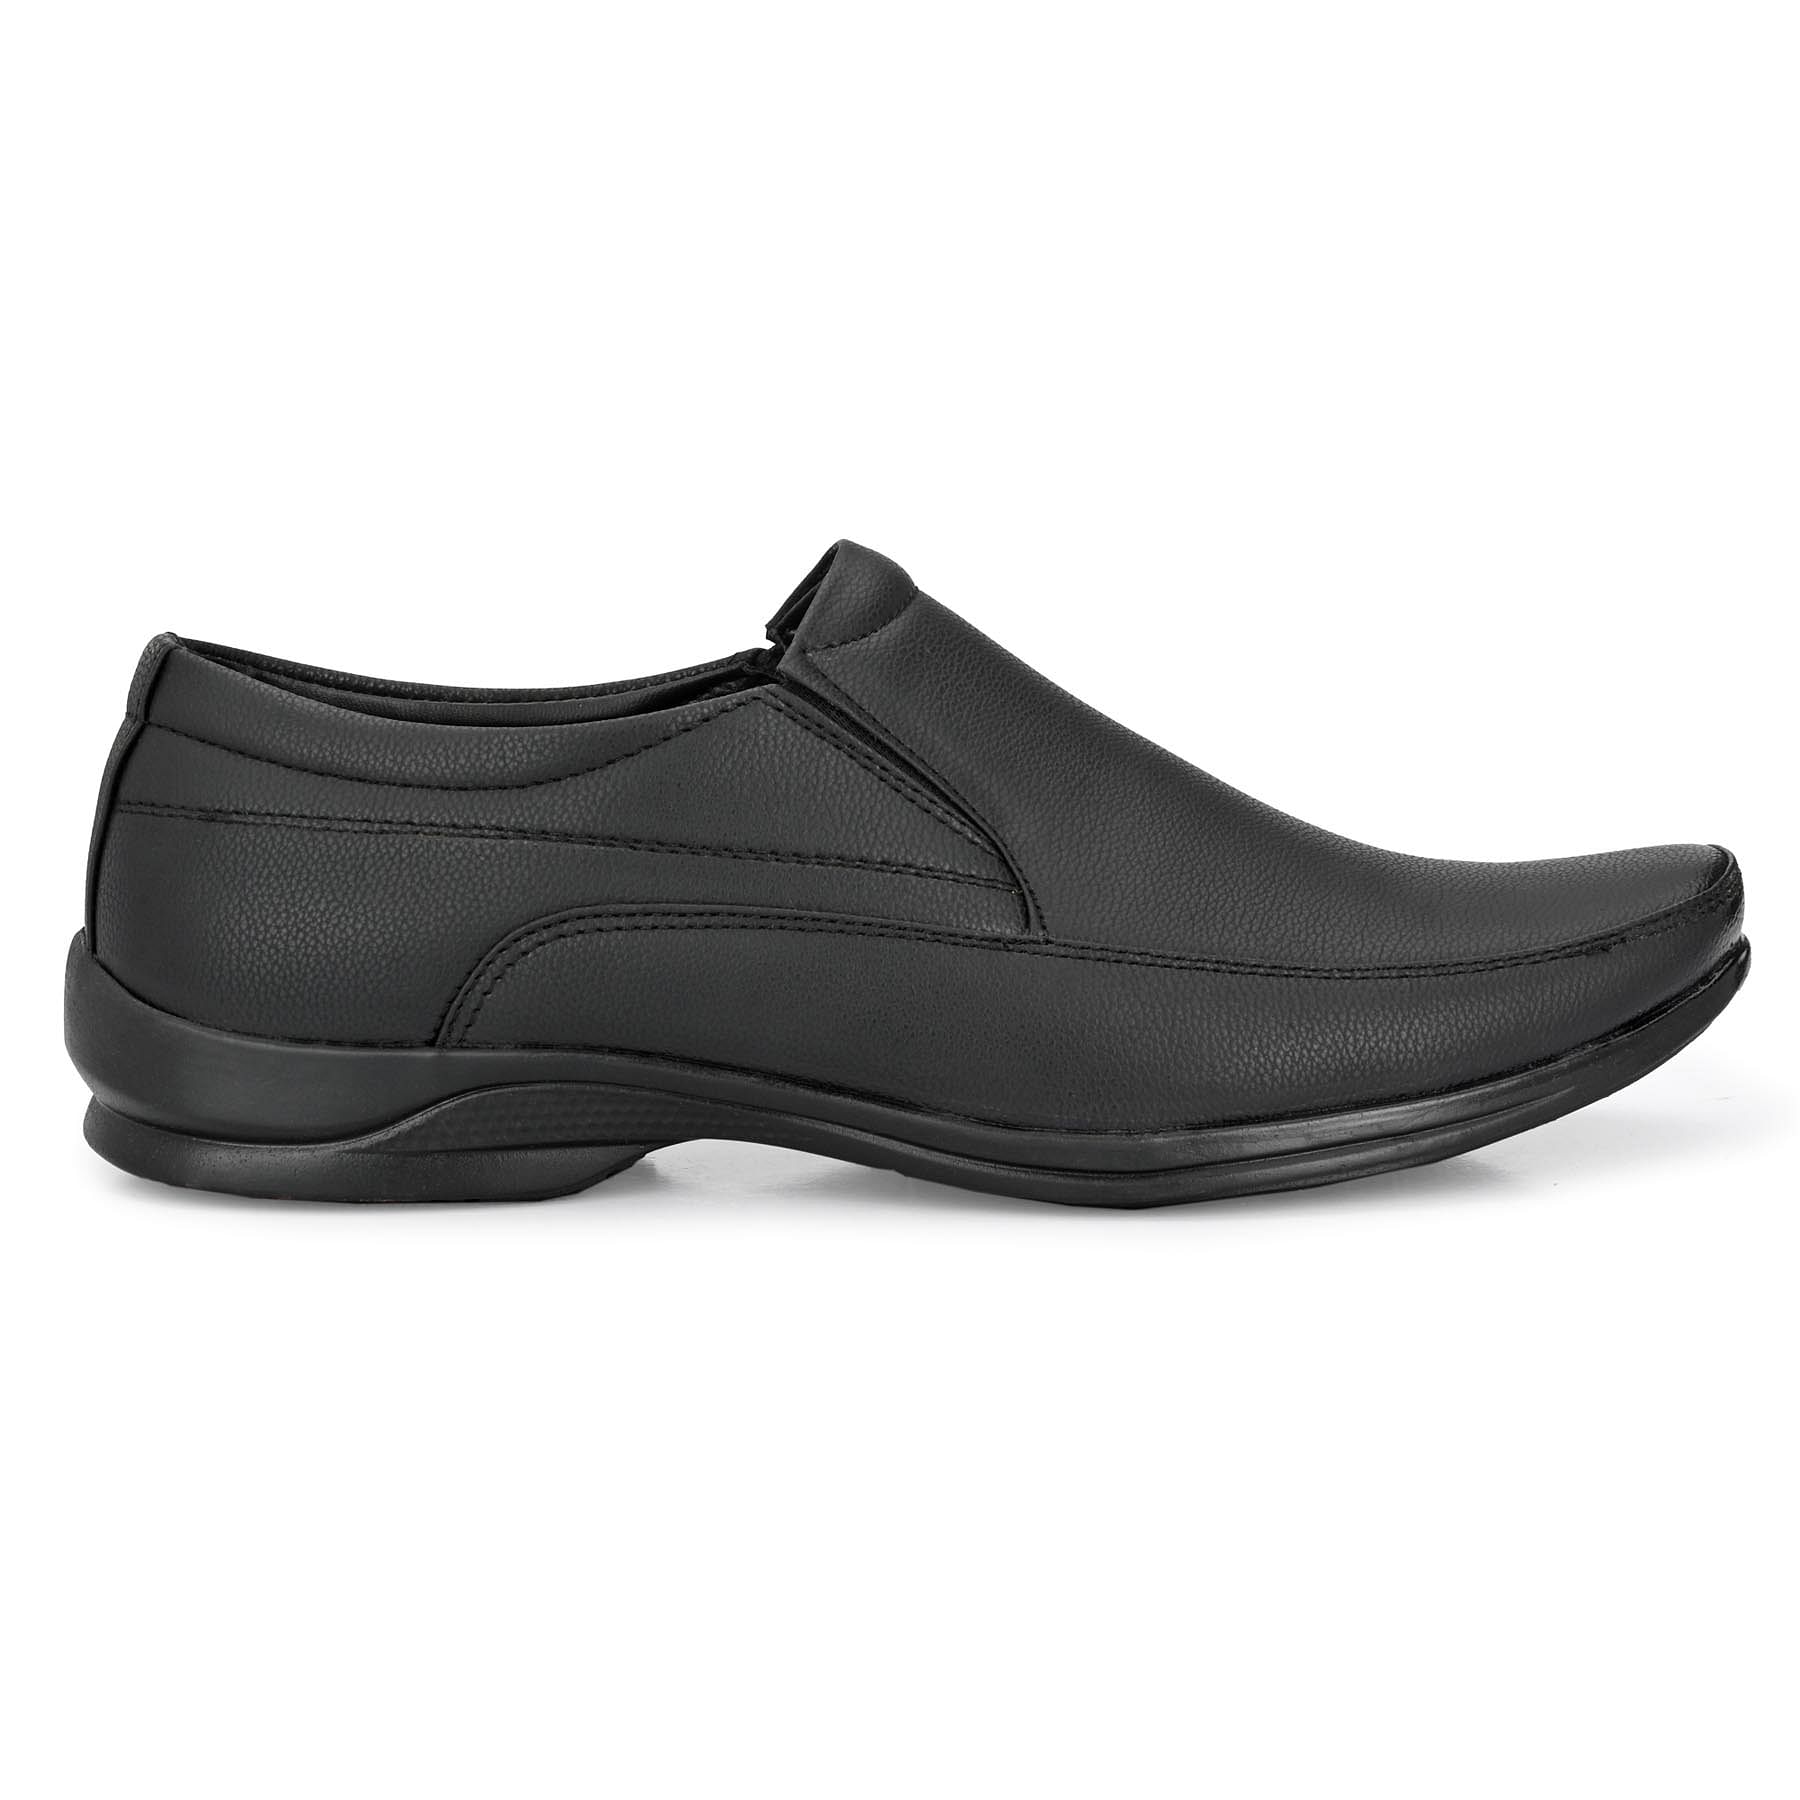 Pair-it Men moccasin Formal Shoes - Black-MN-RYDER206